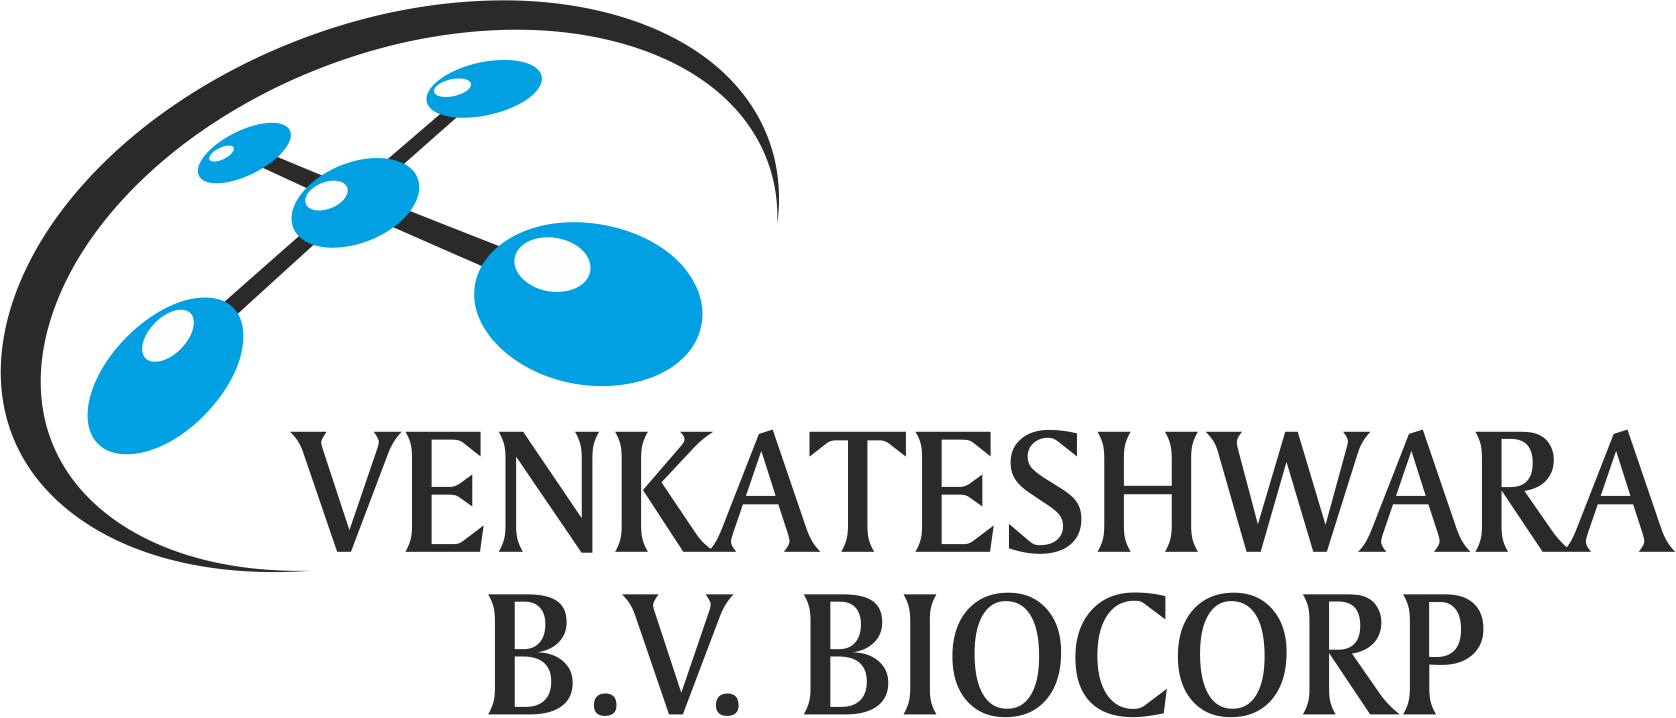 Venkateshwara B.V. Biocorp